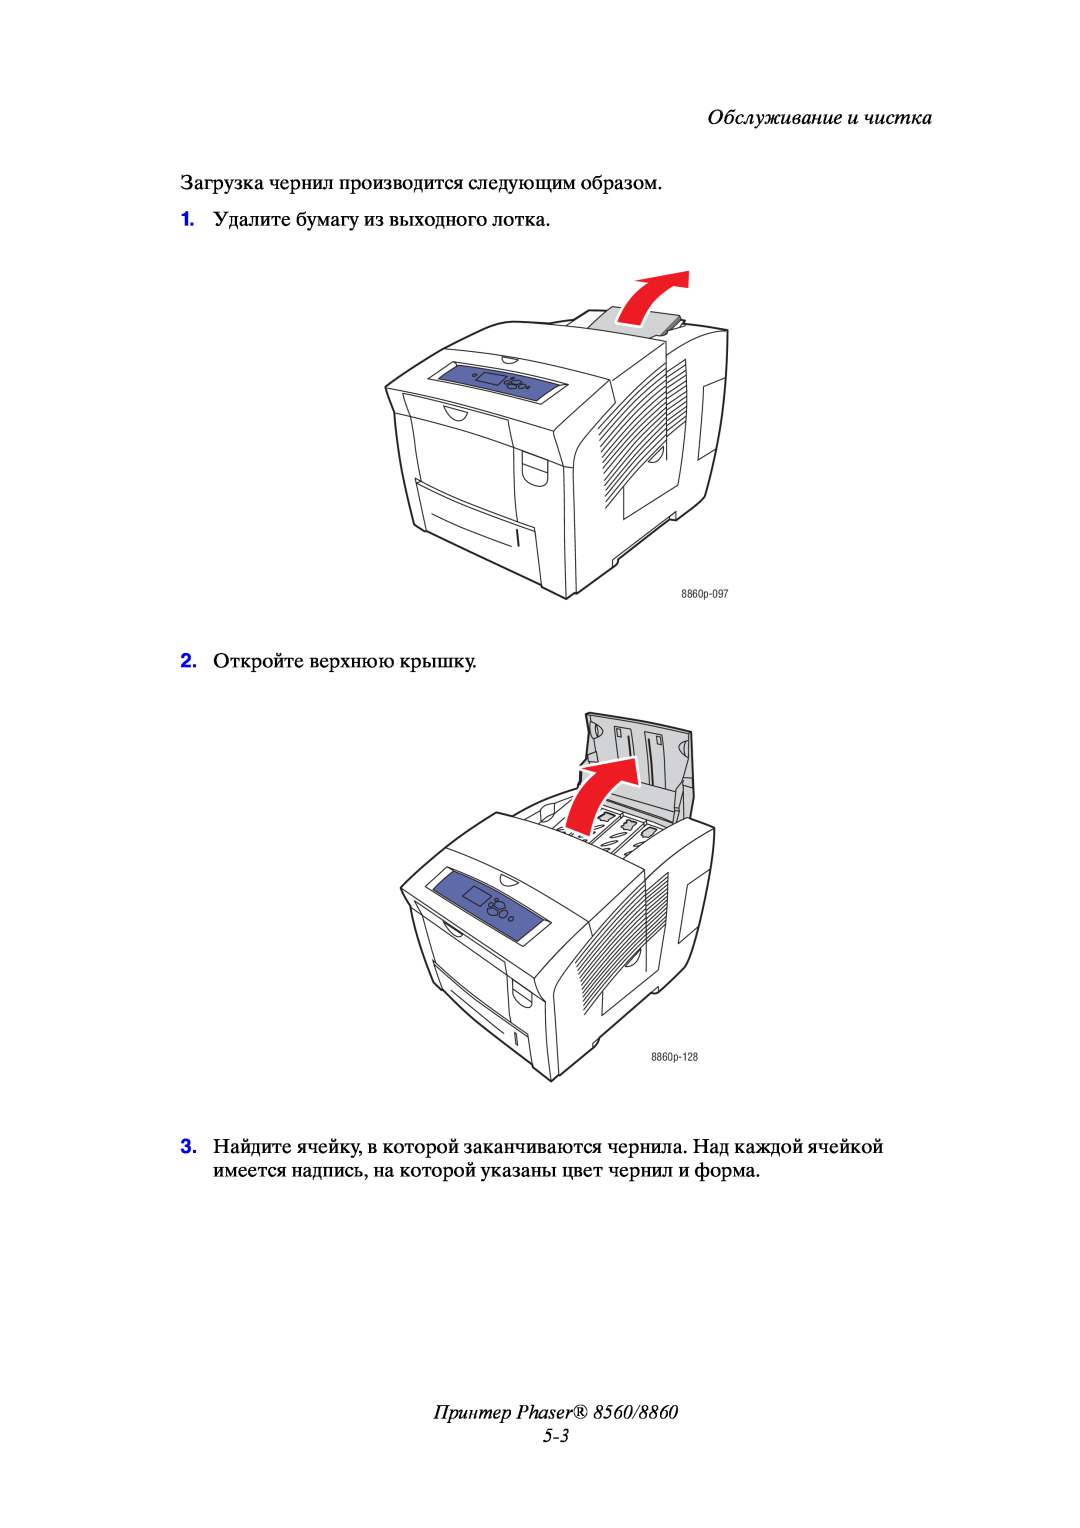 Xerox Принтер Phaser 8560/8860 5-3, Обслуживание и чистка, Загрузка чернил производится следующим образом, 8860p-097 